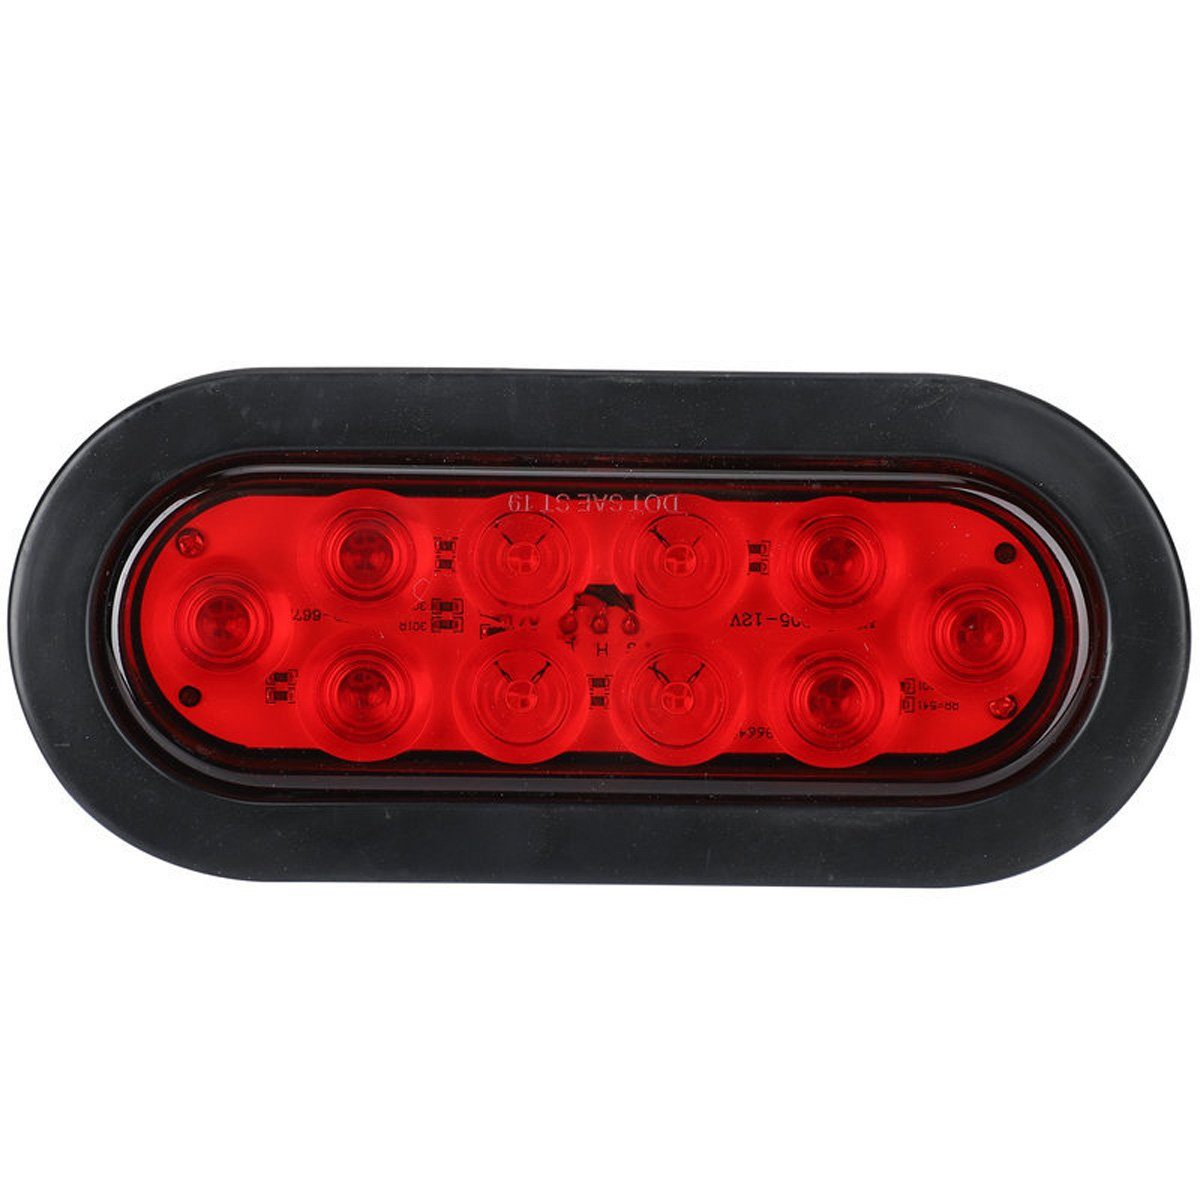 götäzer Anhänger-Rückleuchte 2 Stück ovale LED-Anhängerleuchten, Brems-/Blinker-Rücklicht 10 LED für Anhänger Rot